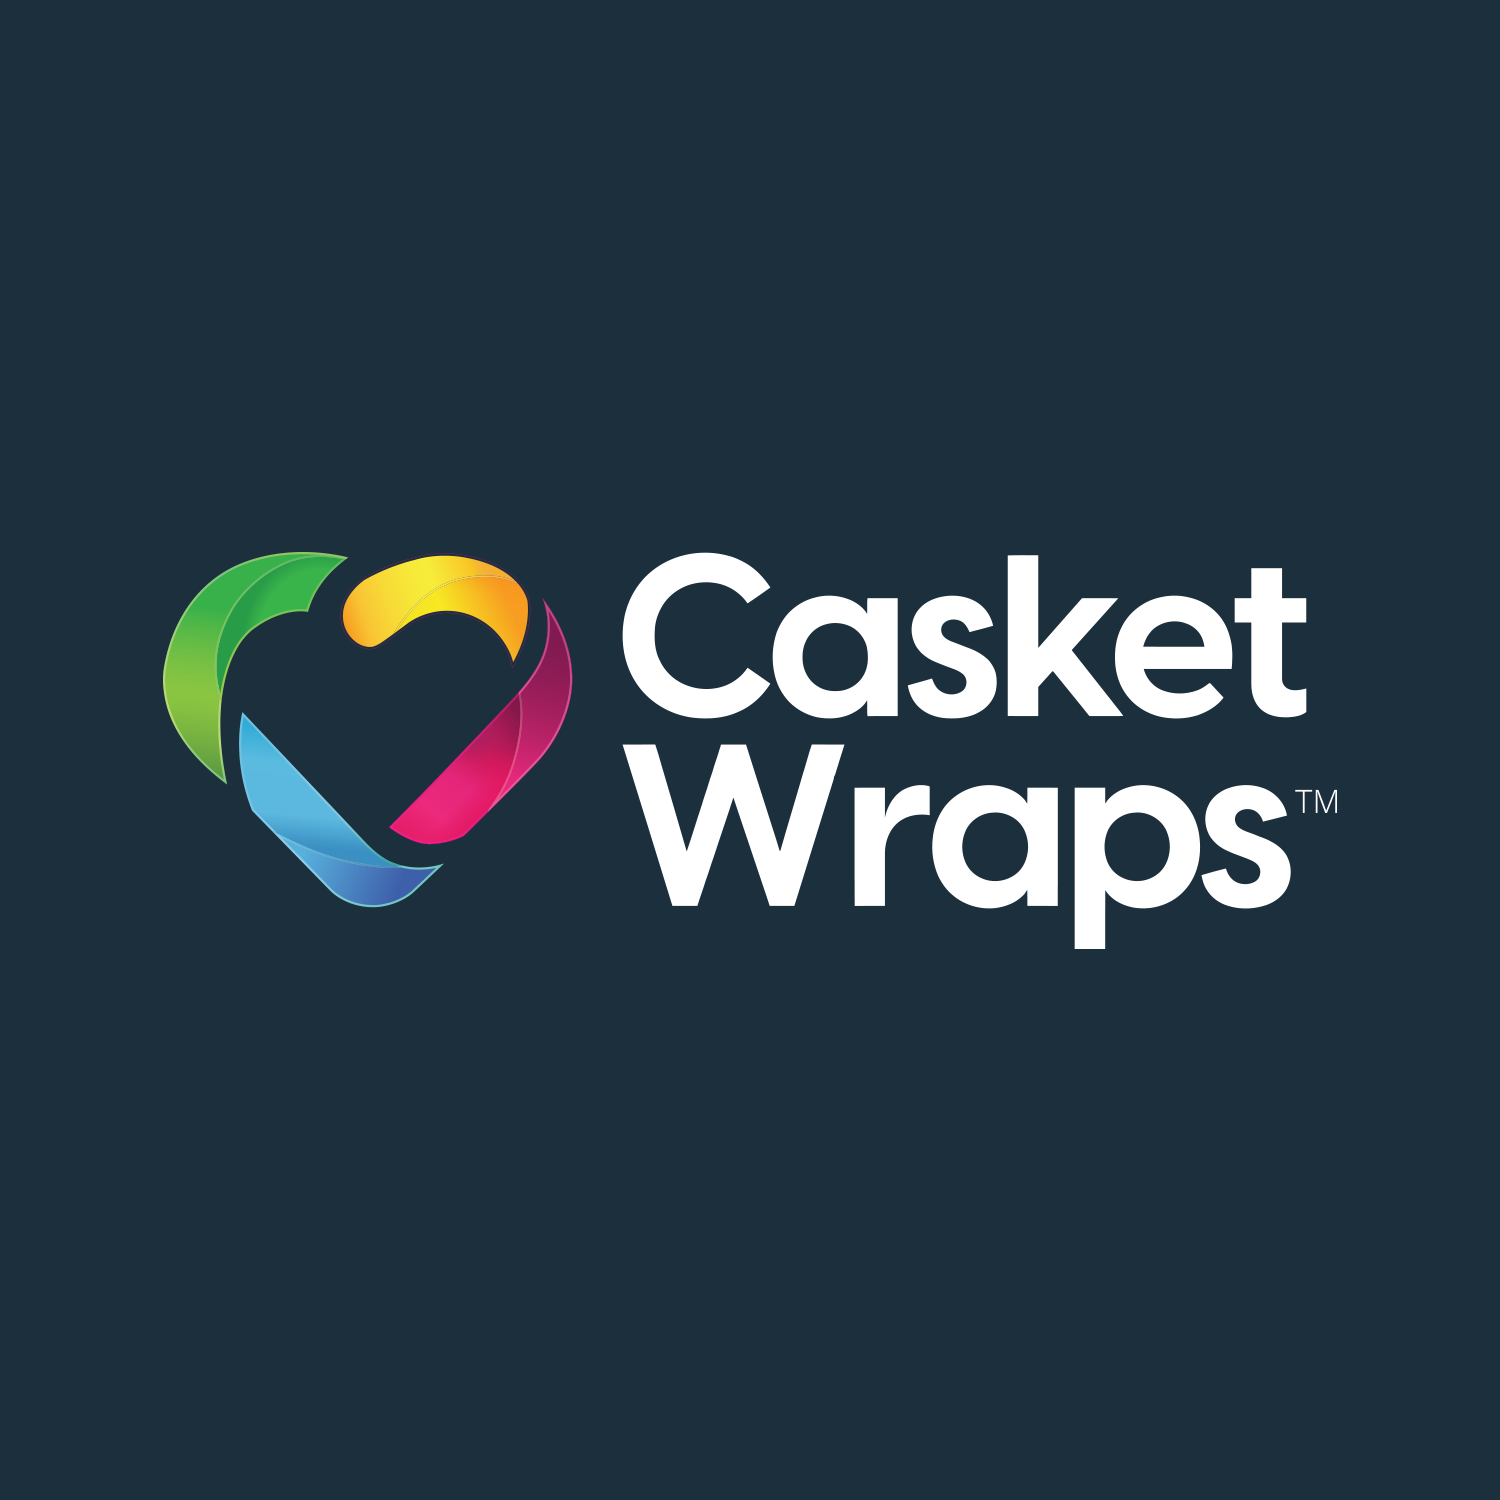 Casket Wraps